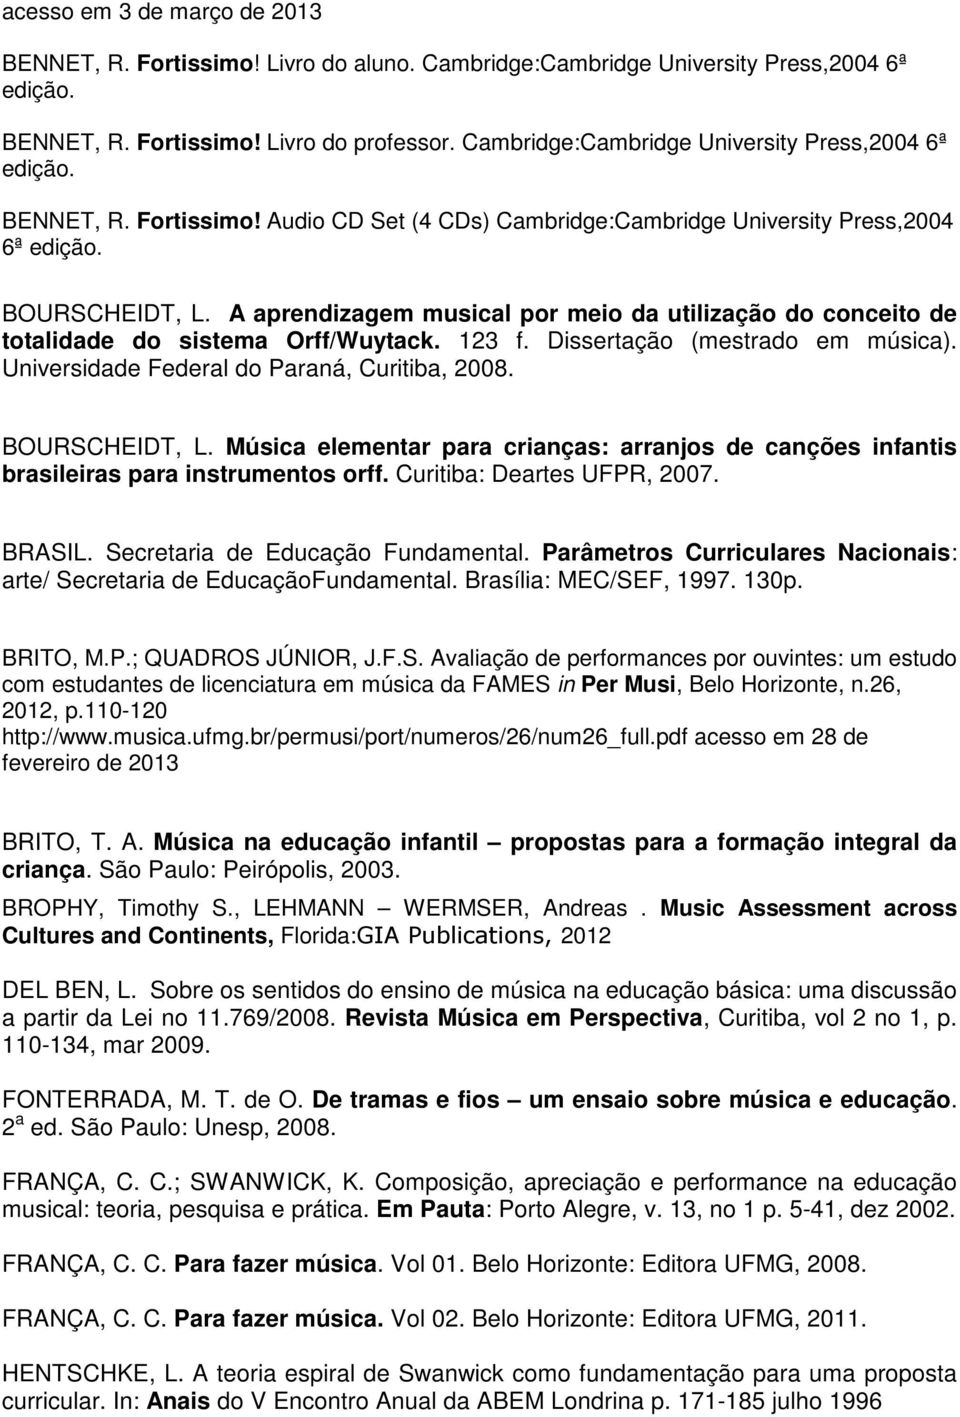 A aprendizagem musical por meio da utilização do conceito de totalidade do sistema Orff/Wuytack. 123 f. Dissertação (mestrado em música). Universidade Federal do Paraná, Curitiba, 2008.